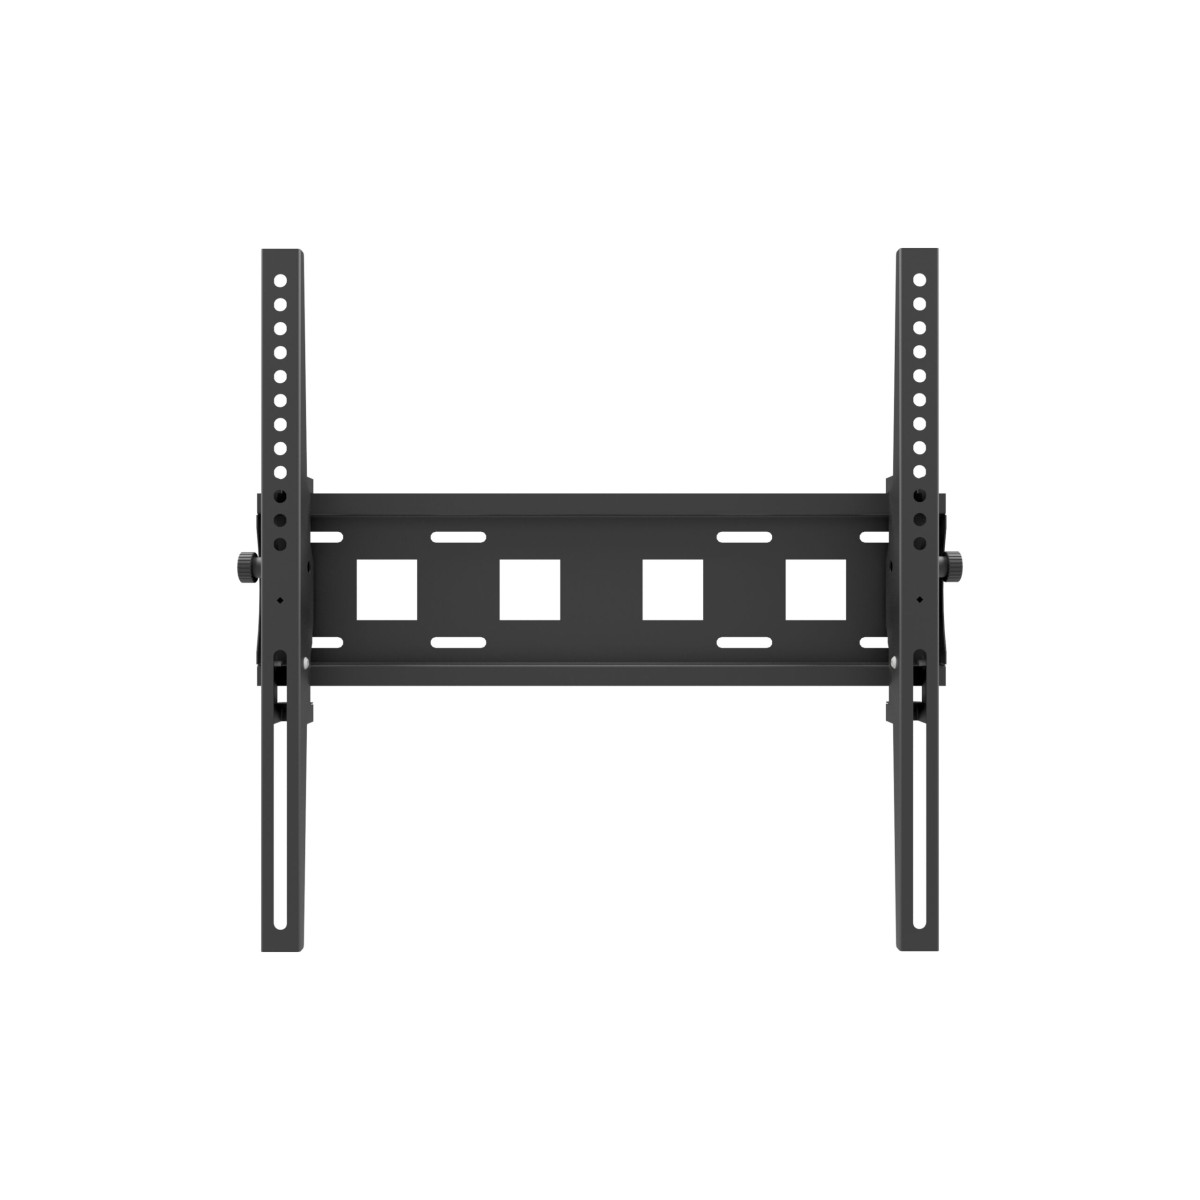 Edbak FSM150 Universal tilt wall mount for 32 “- 55” screens